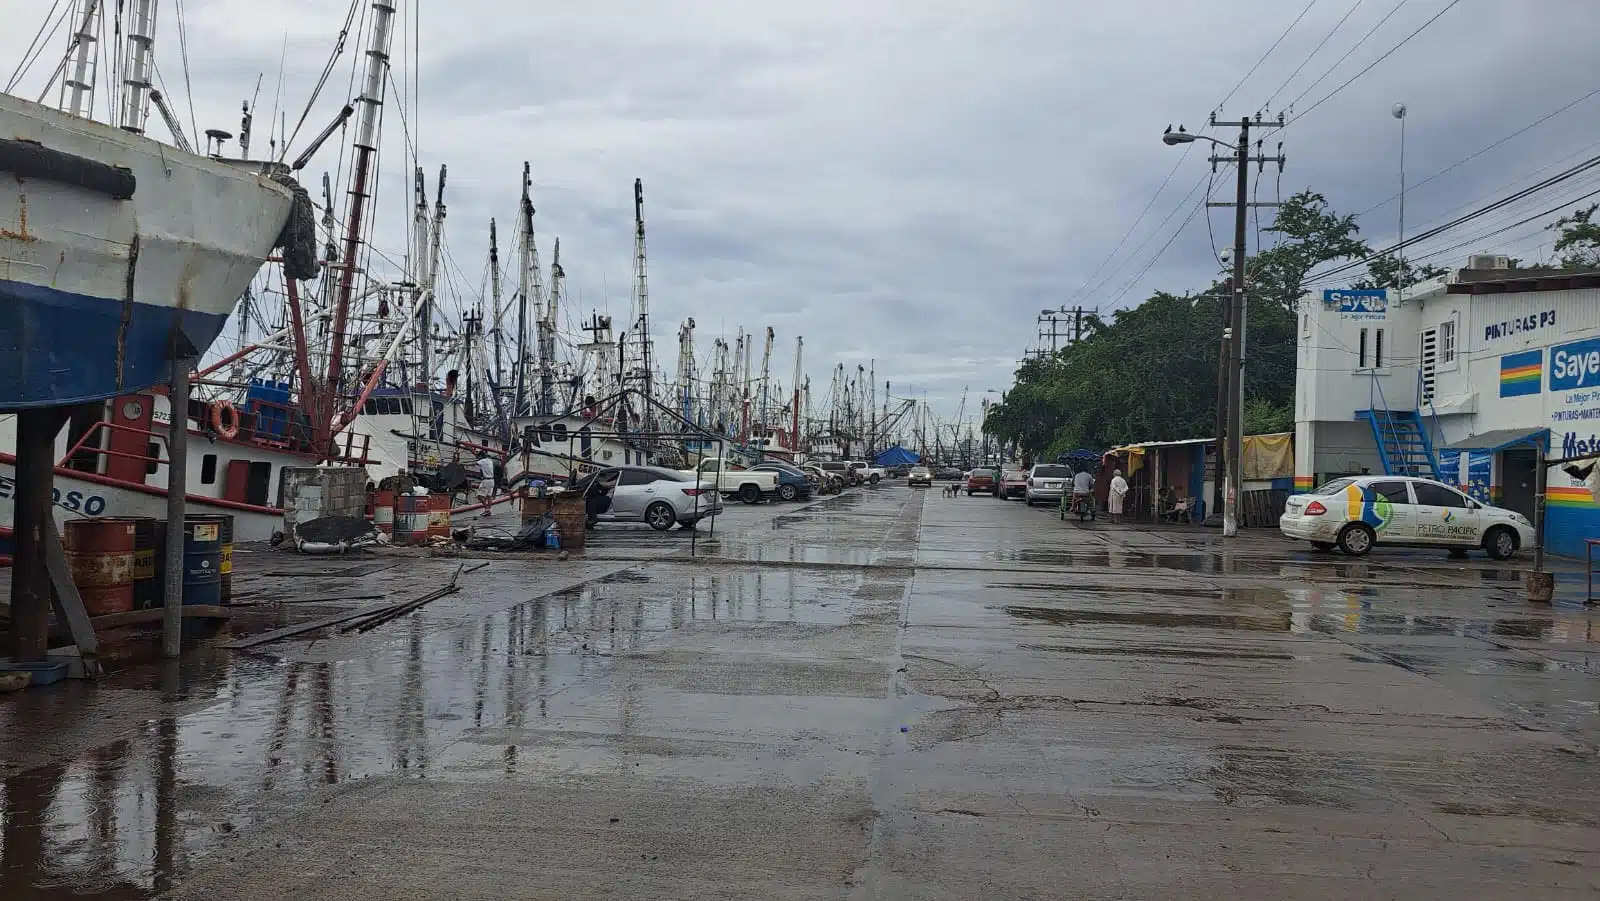 Barcos camaroneros en Mazatlán